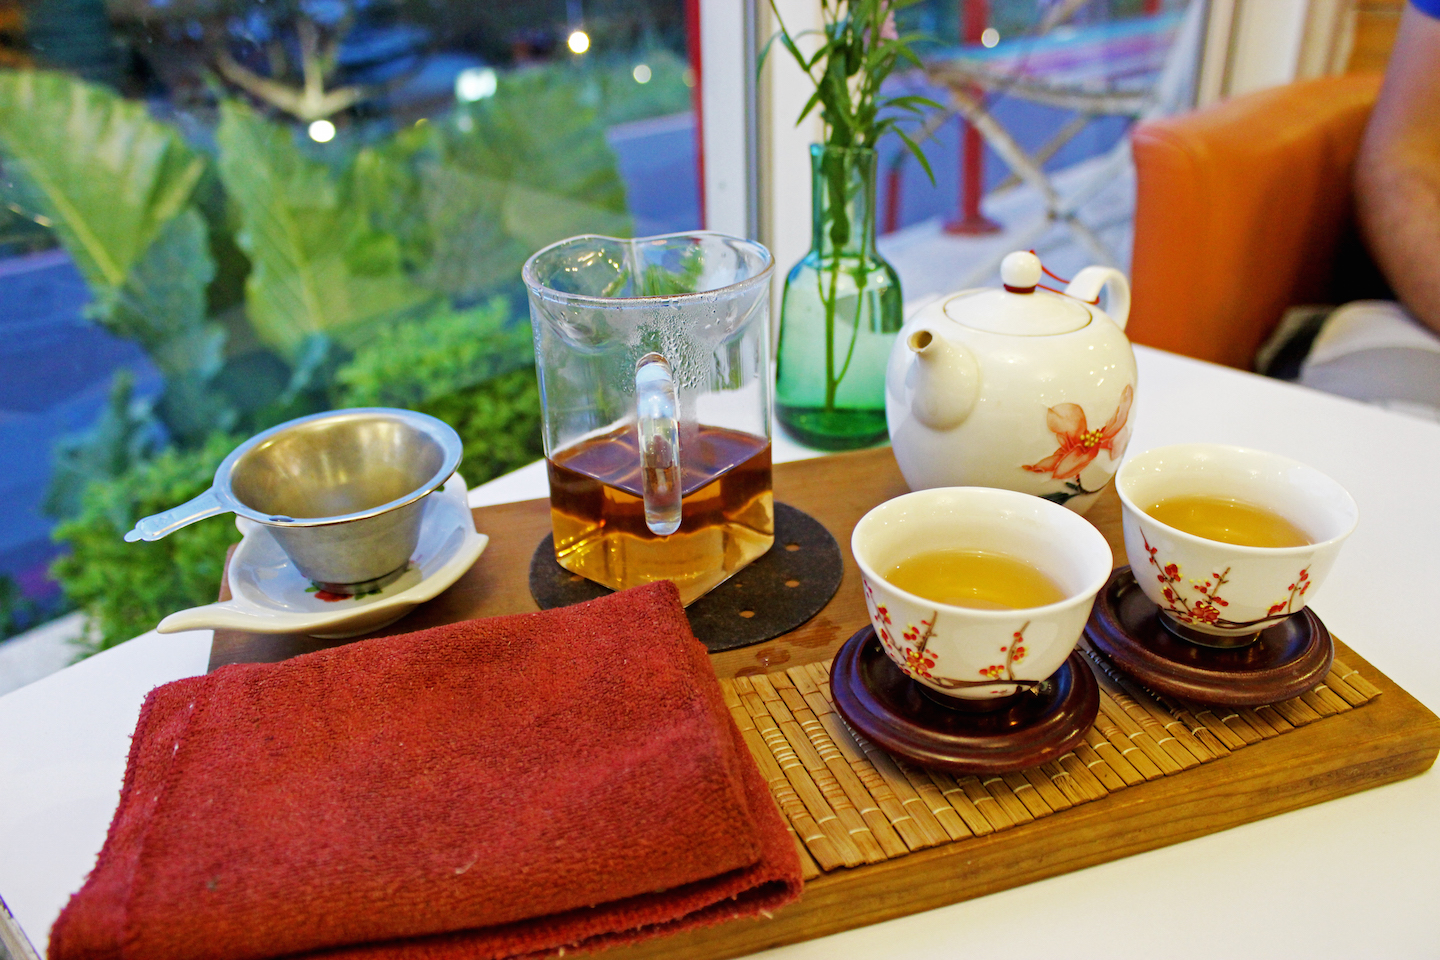 Oolong tea at Maokong Teahouse.